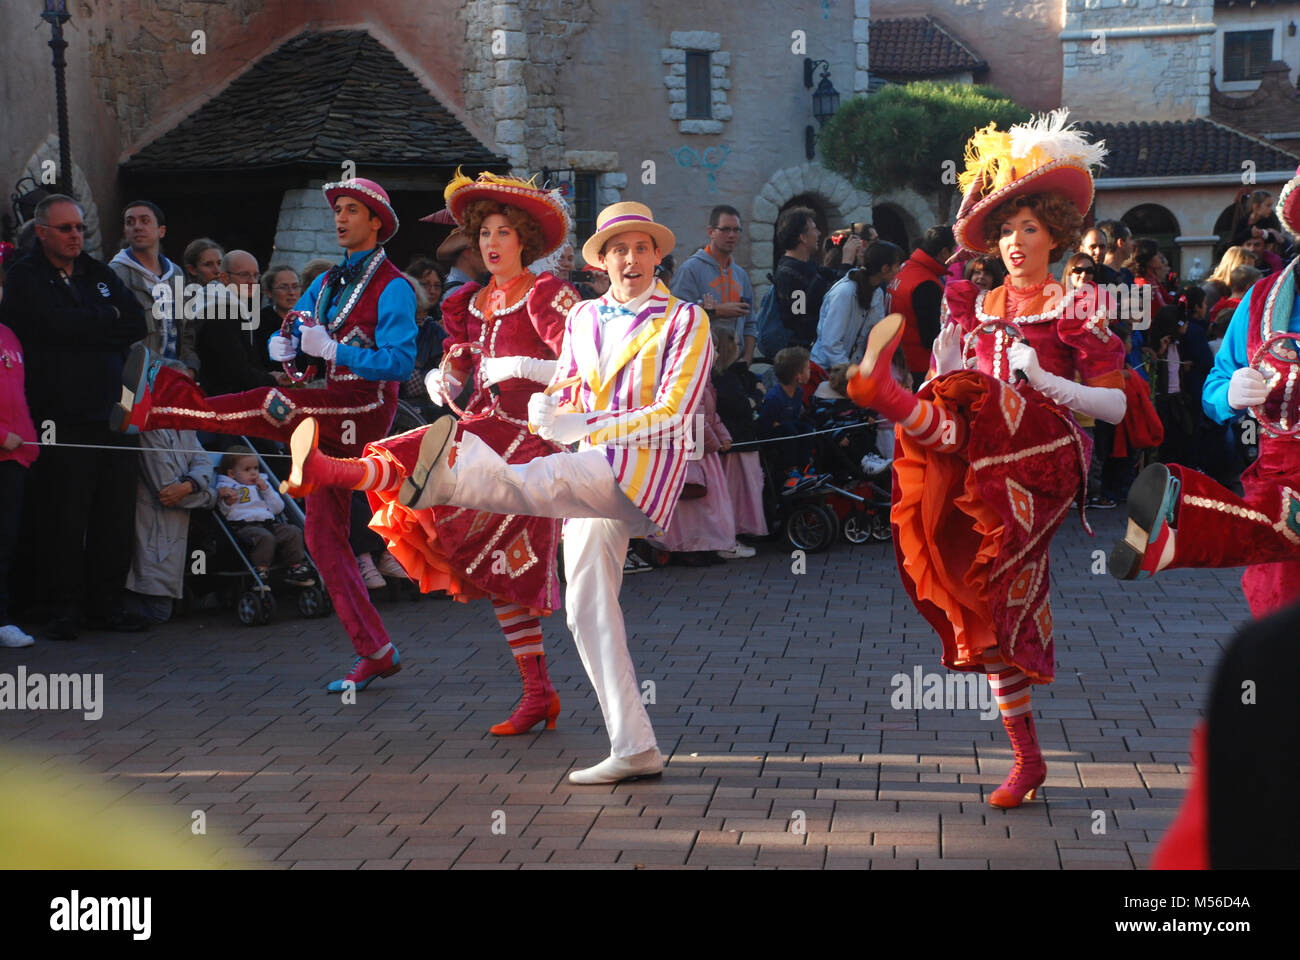 Gli attori in costume dancing in parata in Euro Disney, Parigi, Francia Foto Stock